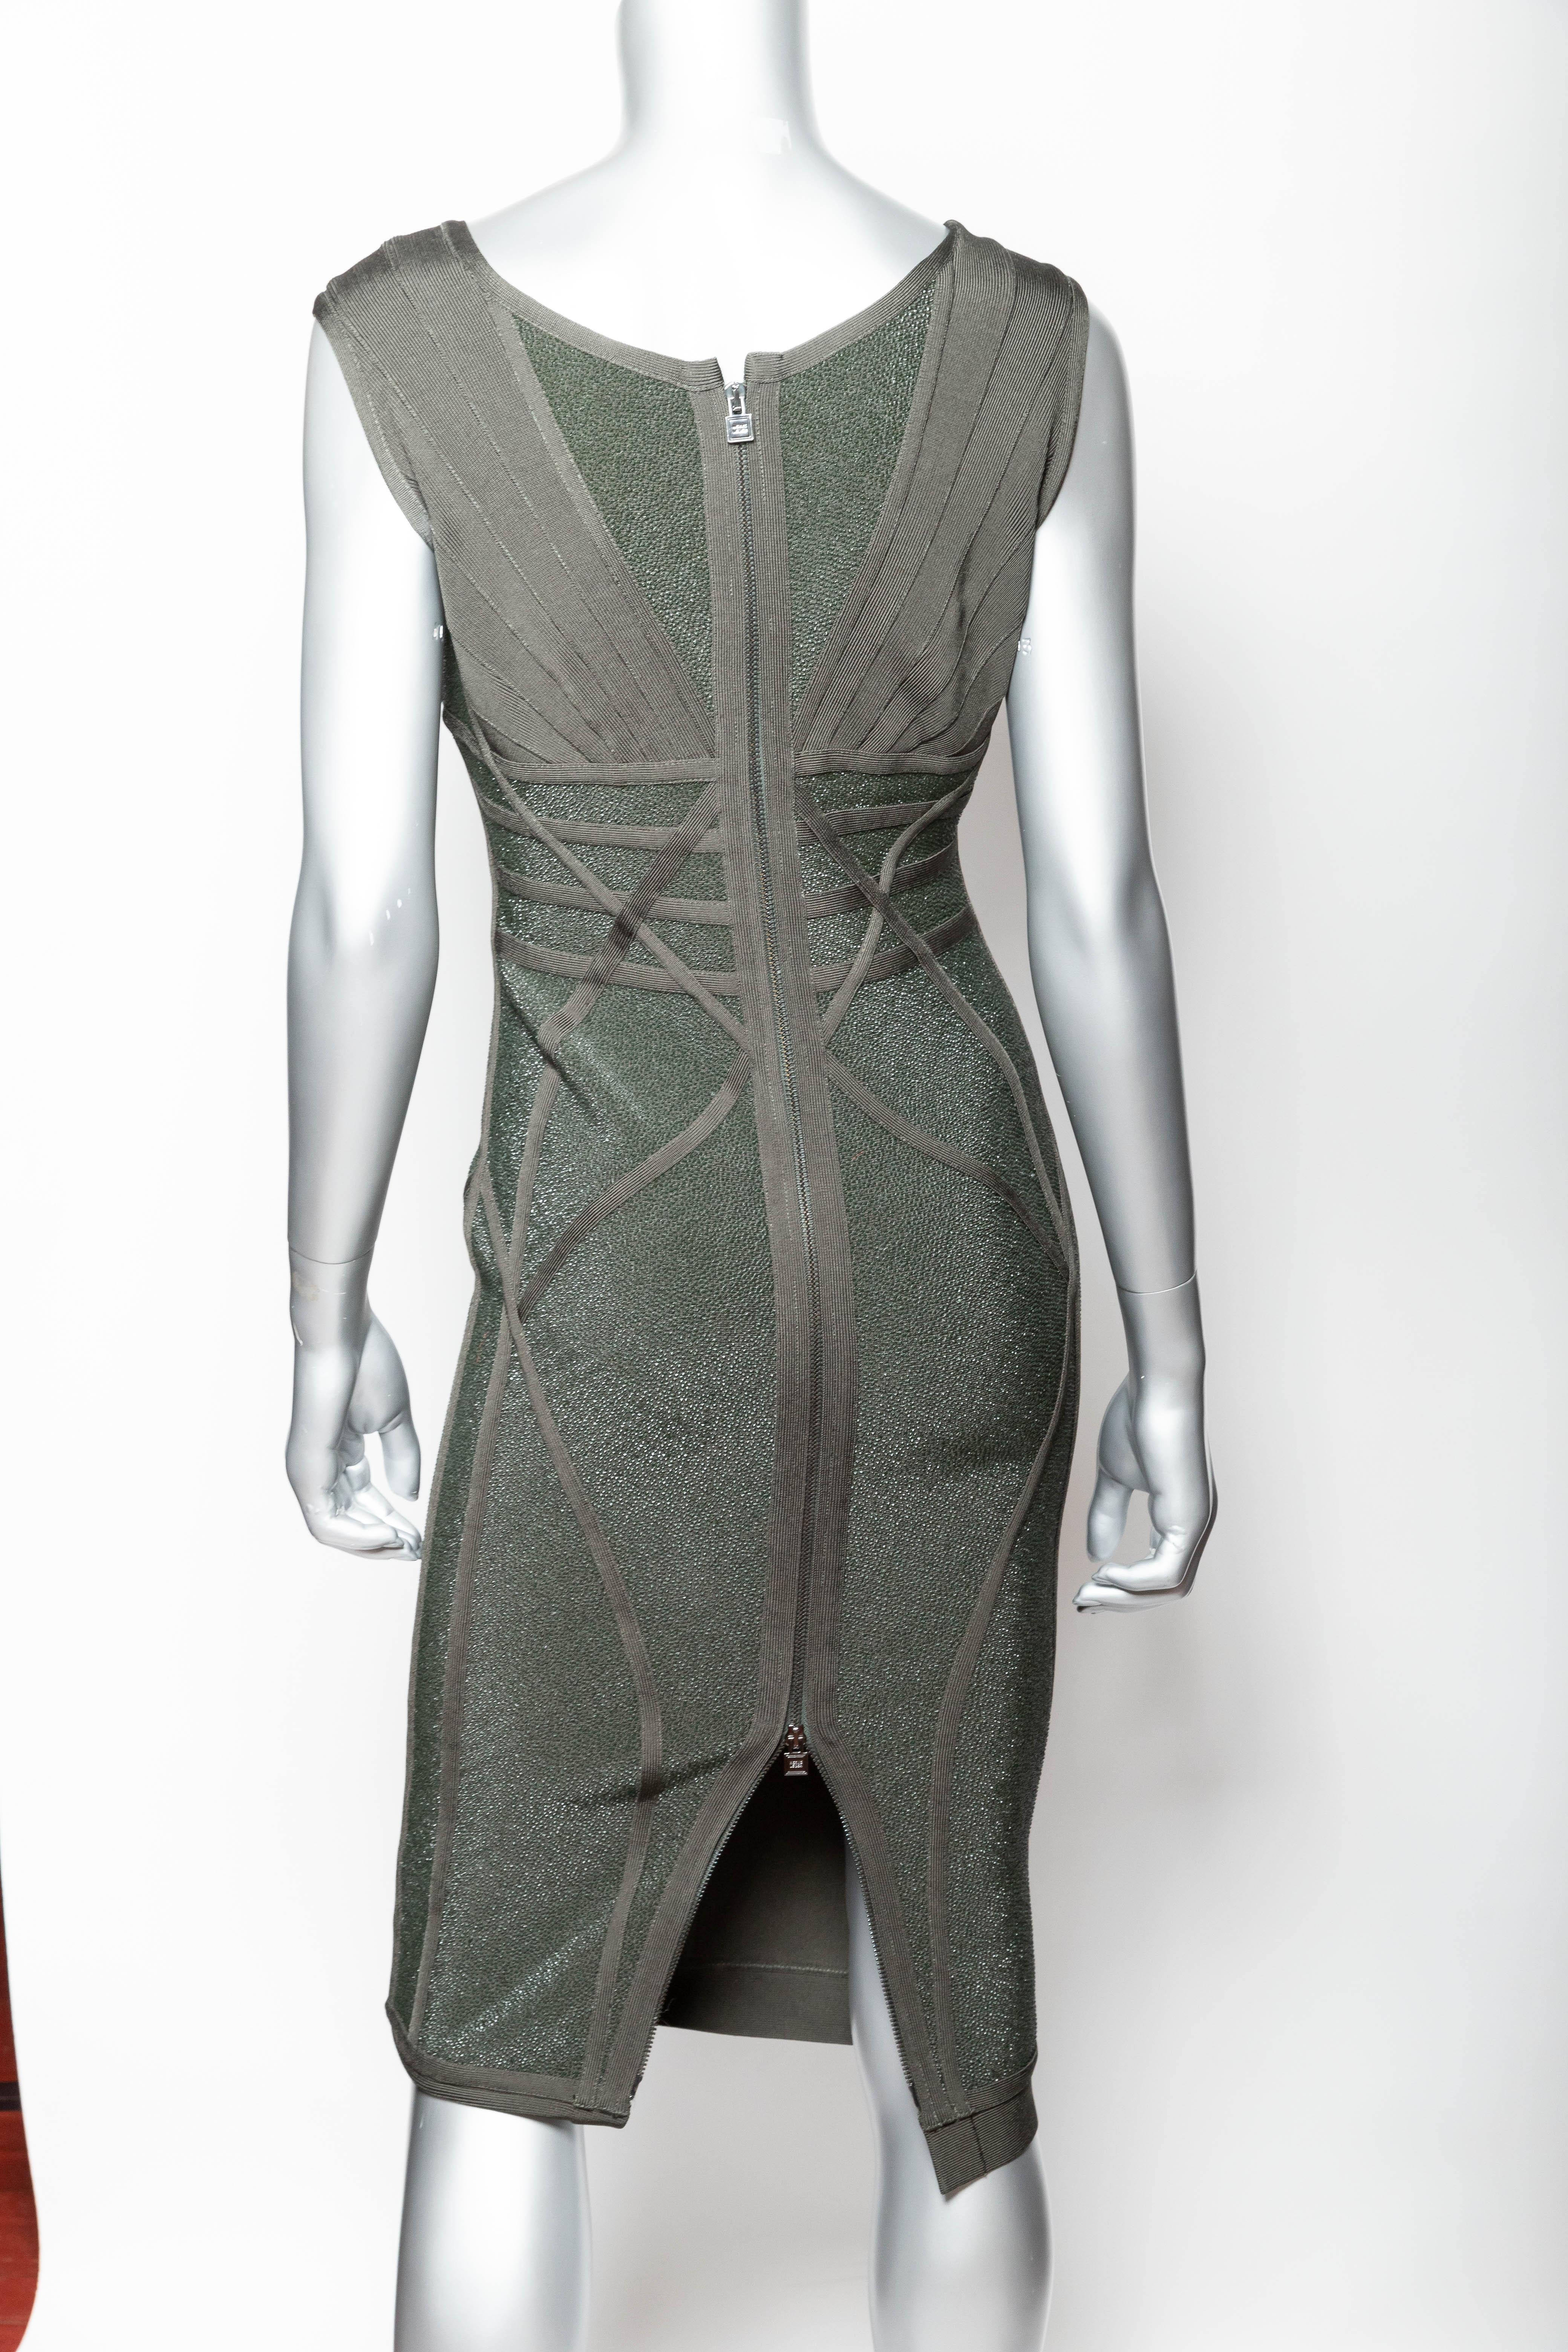 Herve Leger Dress - Medium For Sale 2